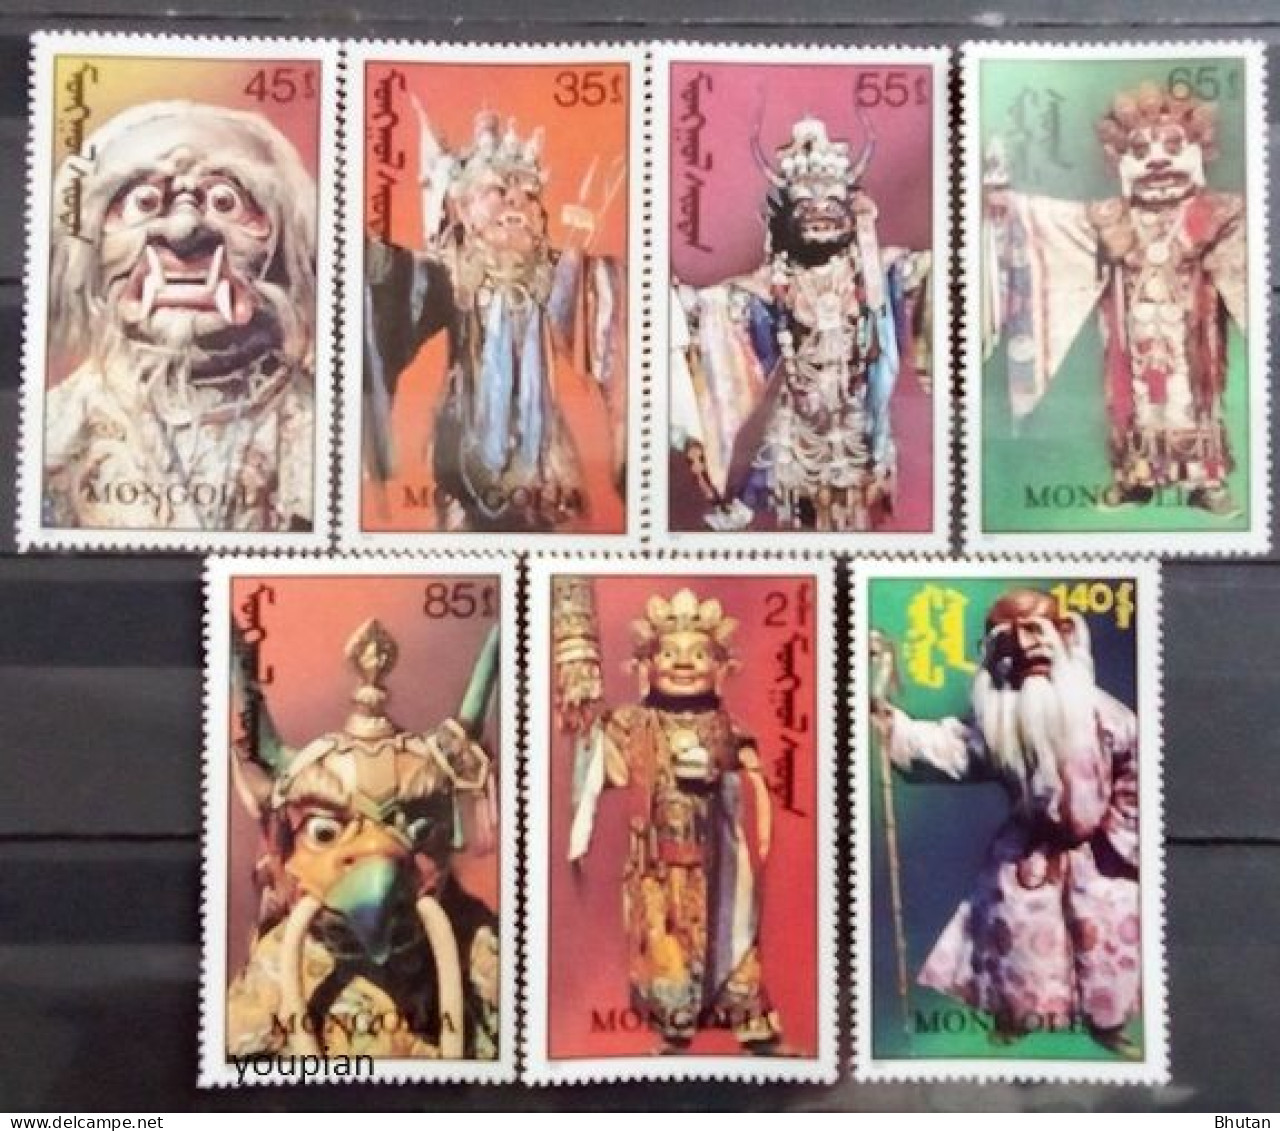 Mongolia 1991, Mongolian Tsam Dance Masks, MNH Stamps Set - Mongolia